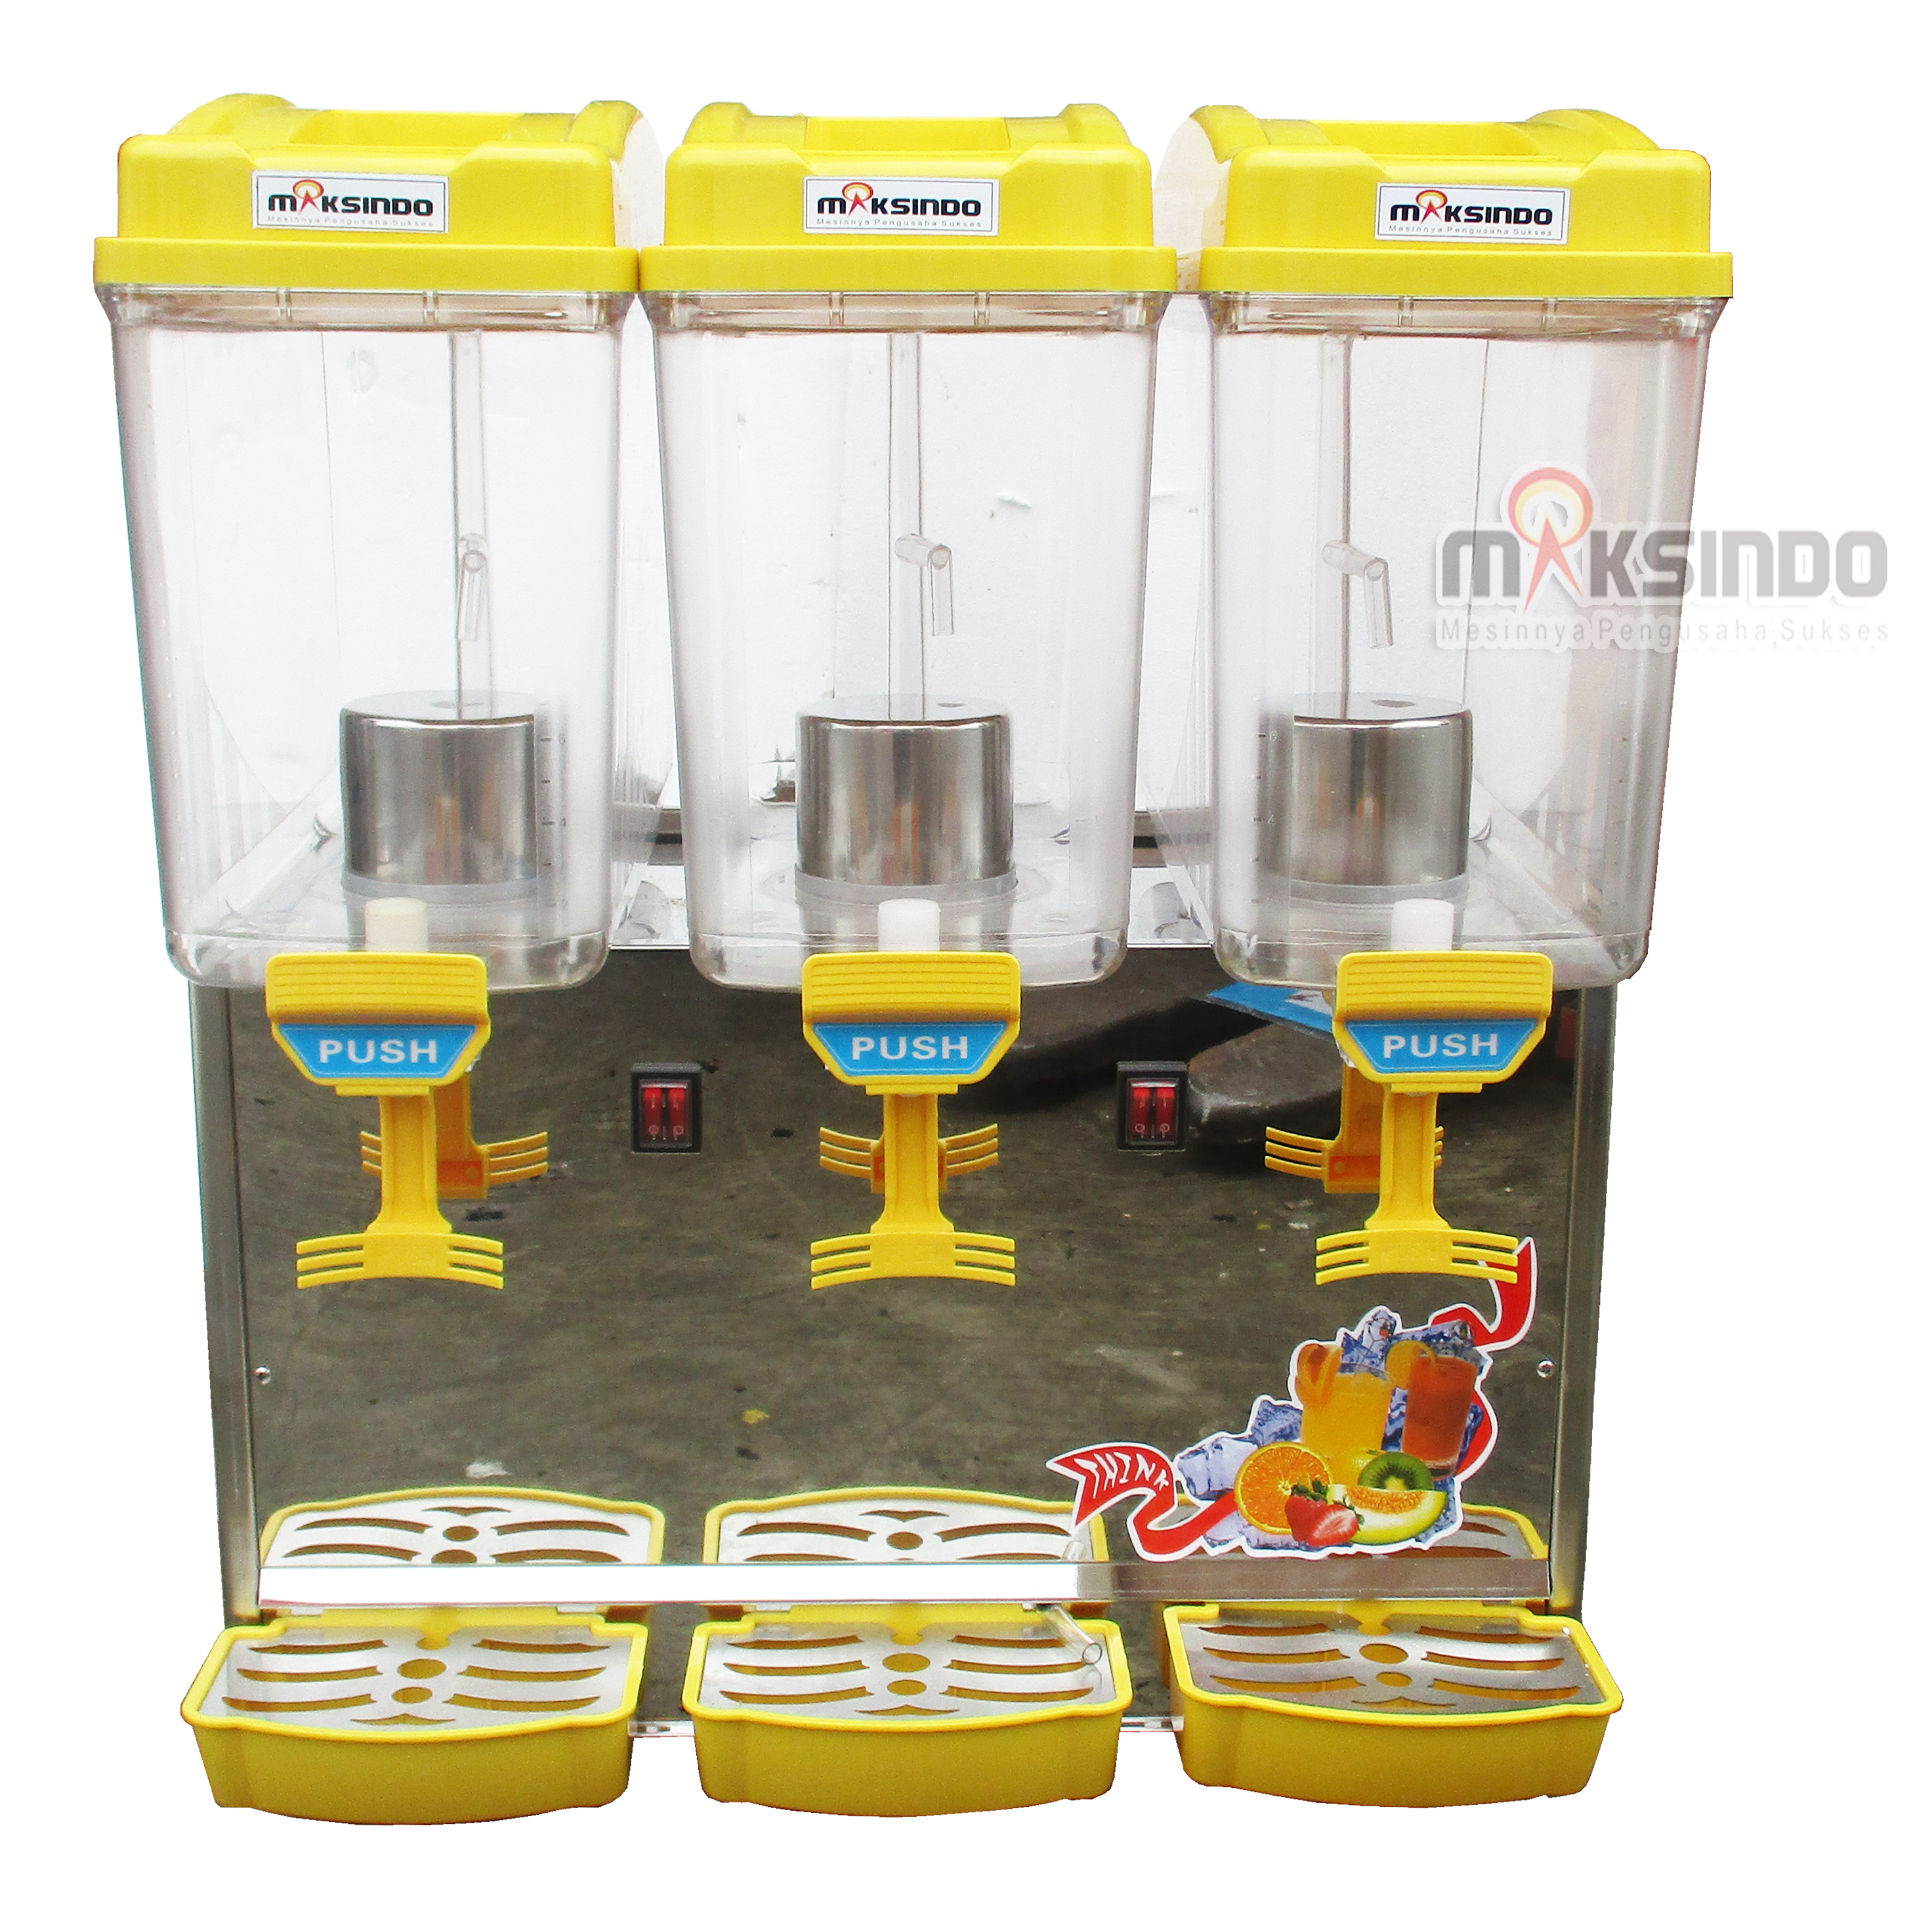 Jual Mesin Juice Dispenser 3 Tabung (17 Liter) – DSP17x3 di Semarang